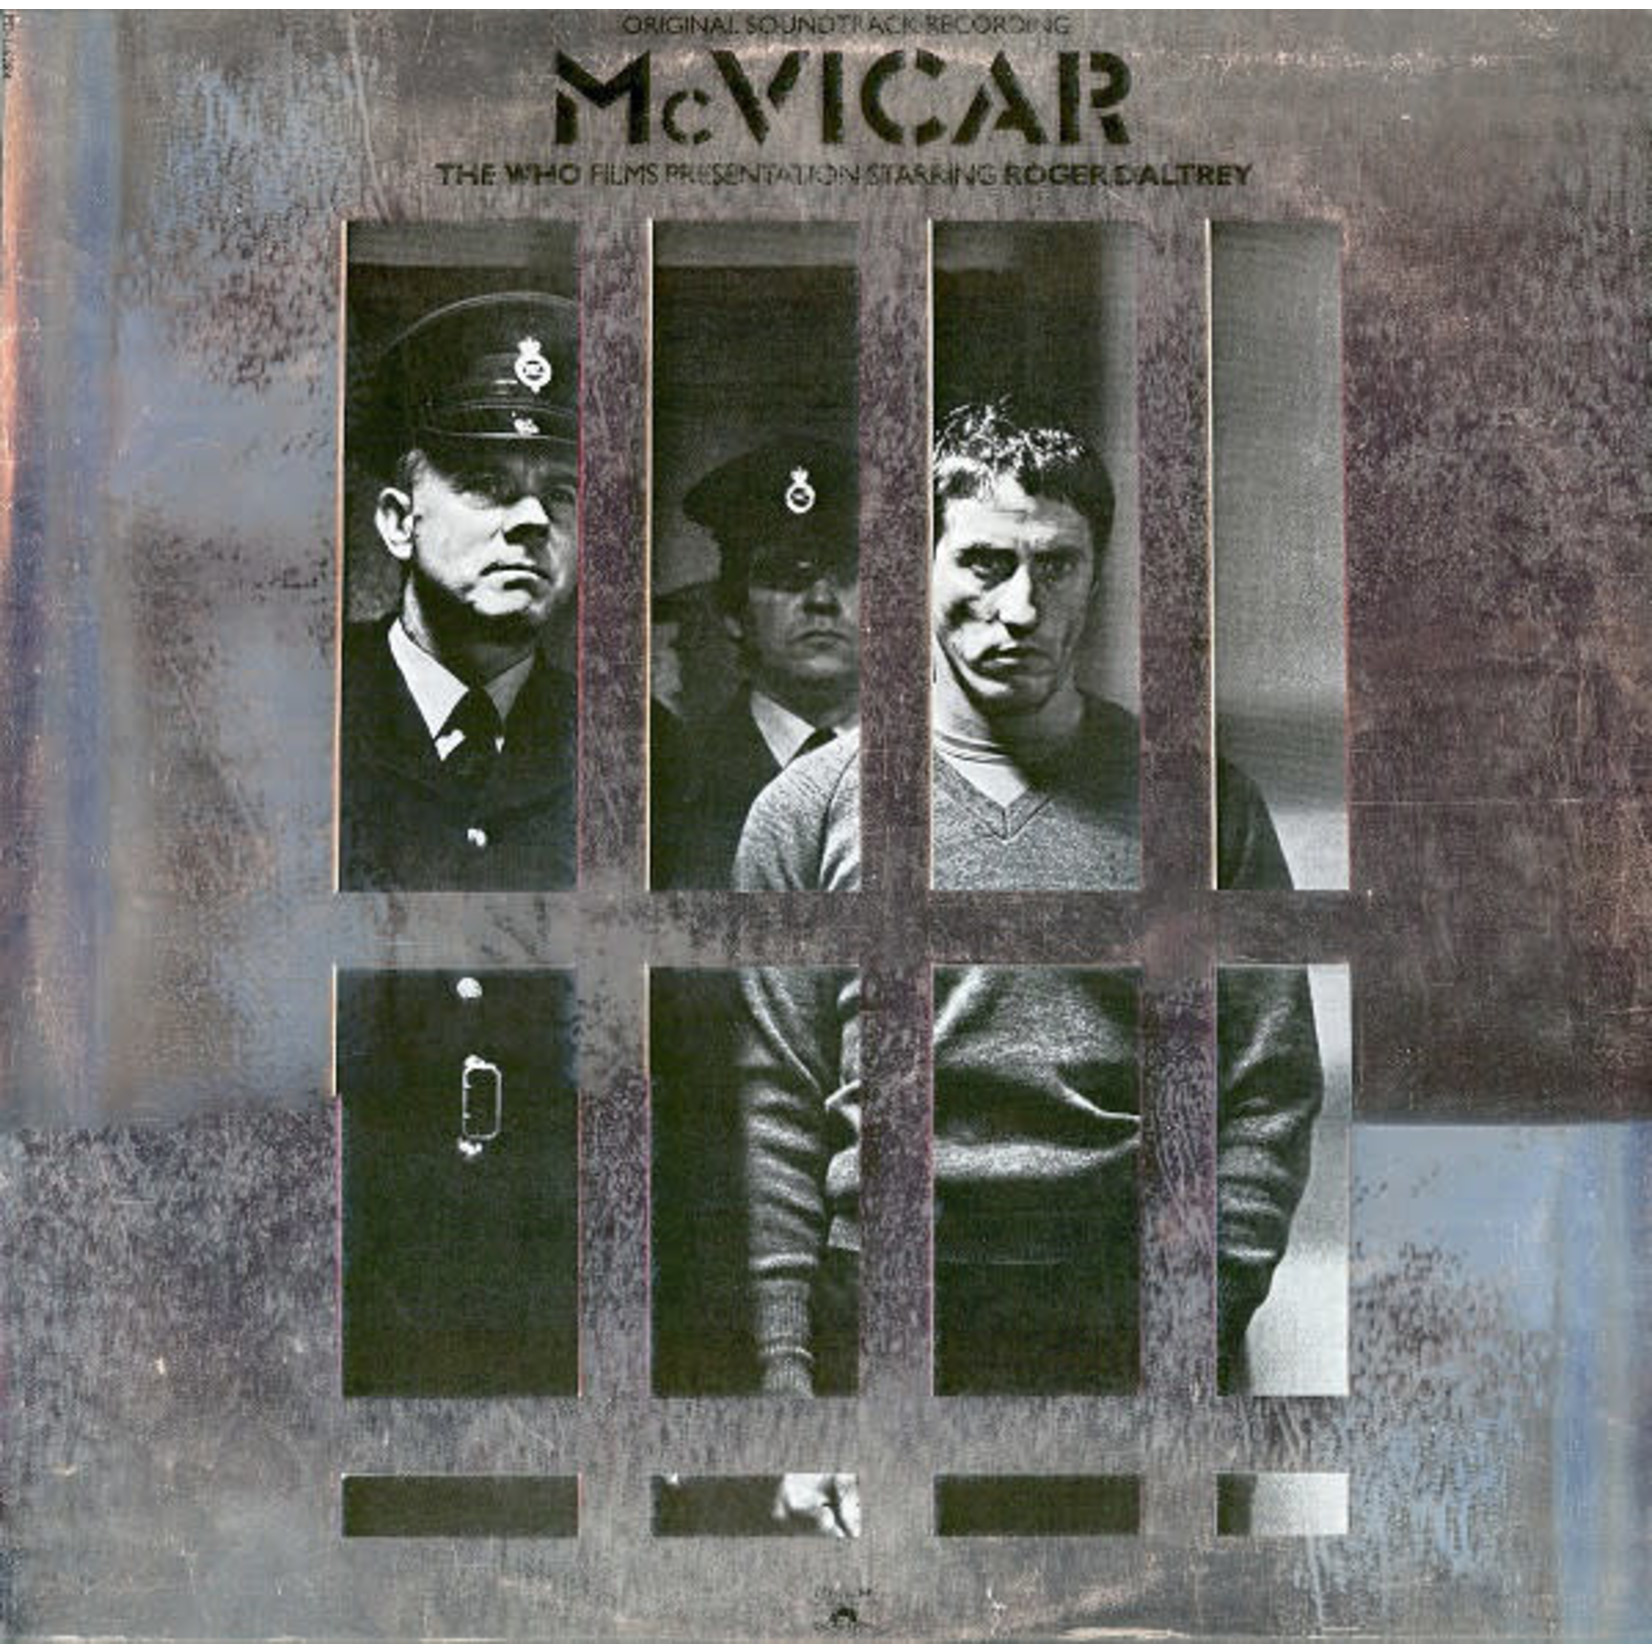 The Who The Who / Roger Daltrey – McVicar (Original Soundtrack Recording) (VG, 1980, LP, Polydor – PD-1-6284, Canada)